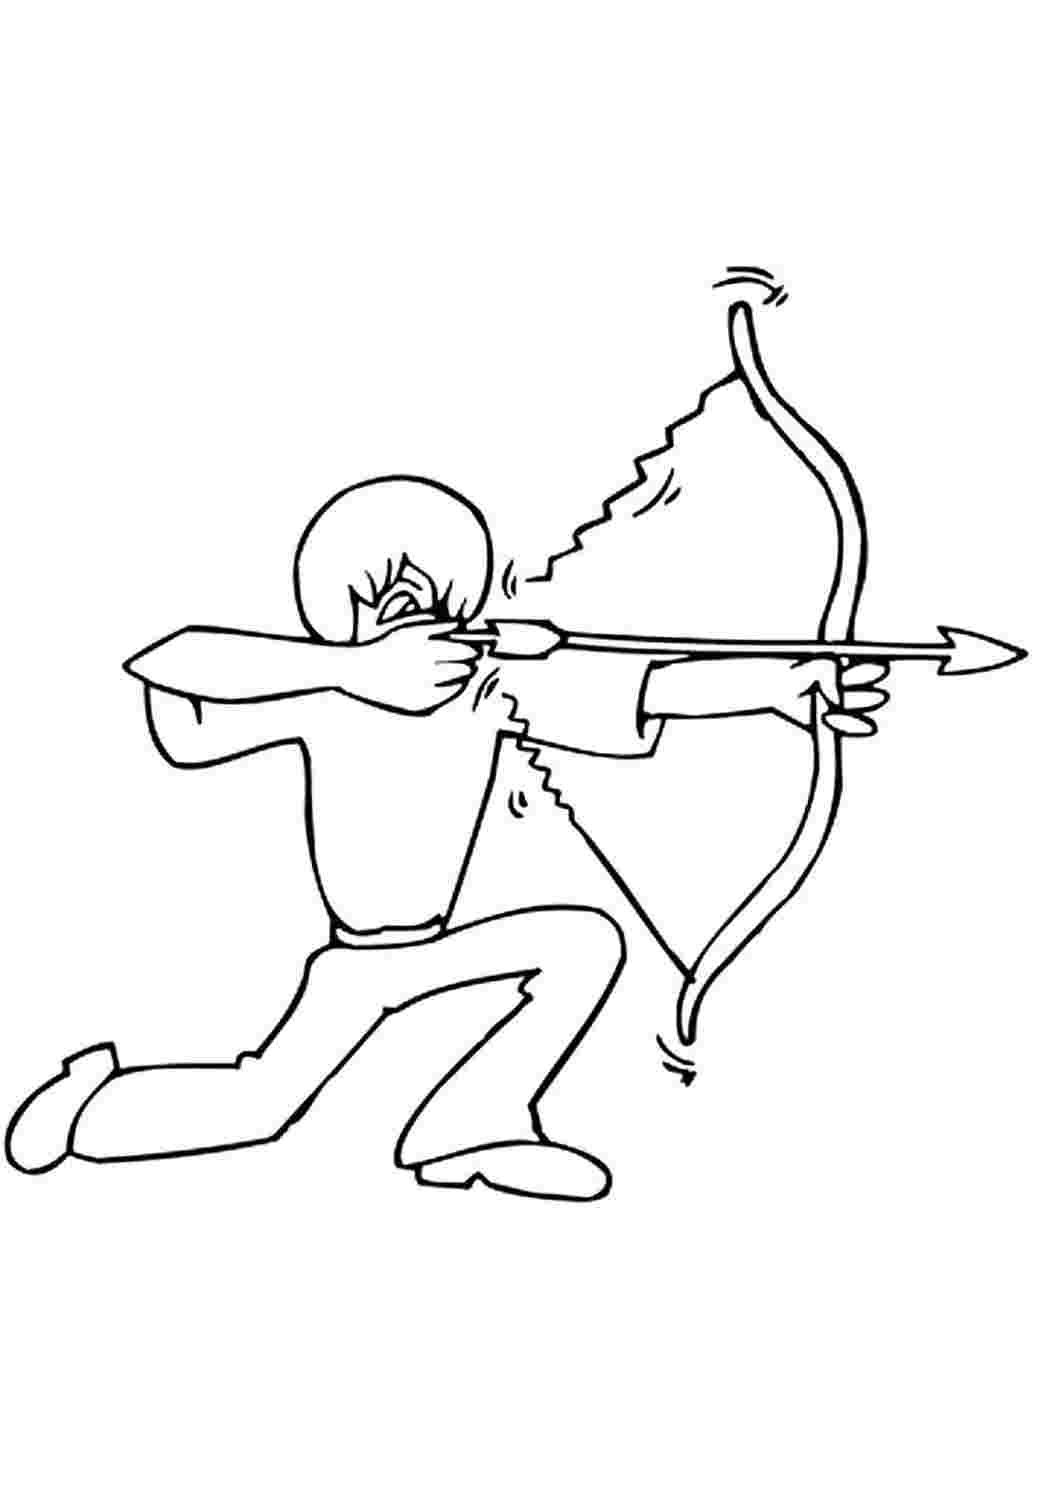 Лук и стрелы раскраска для детей